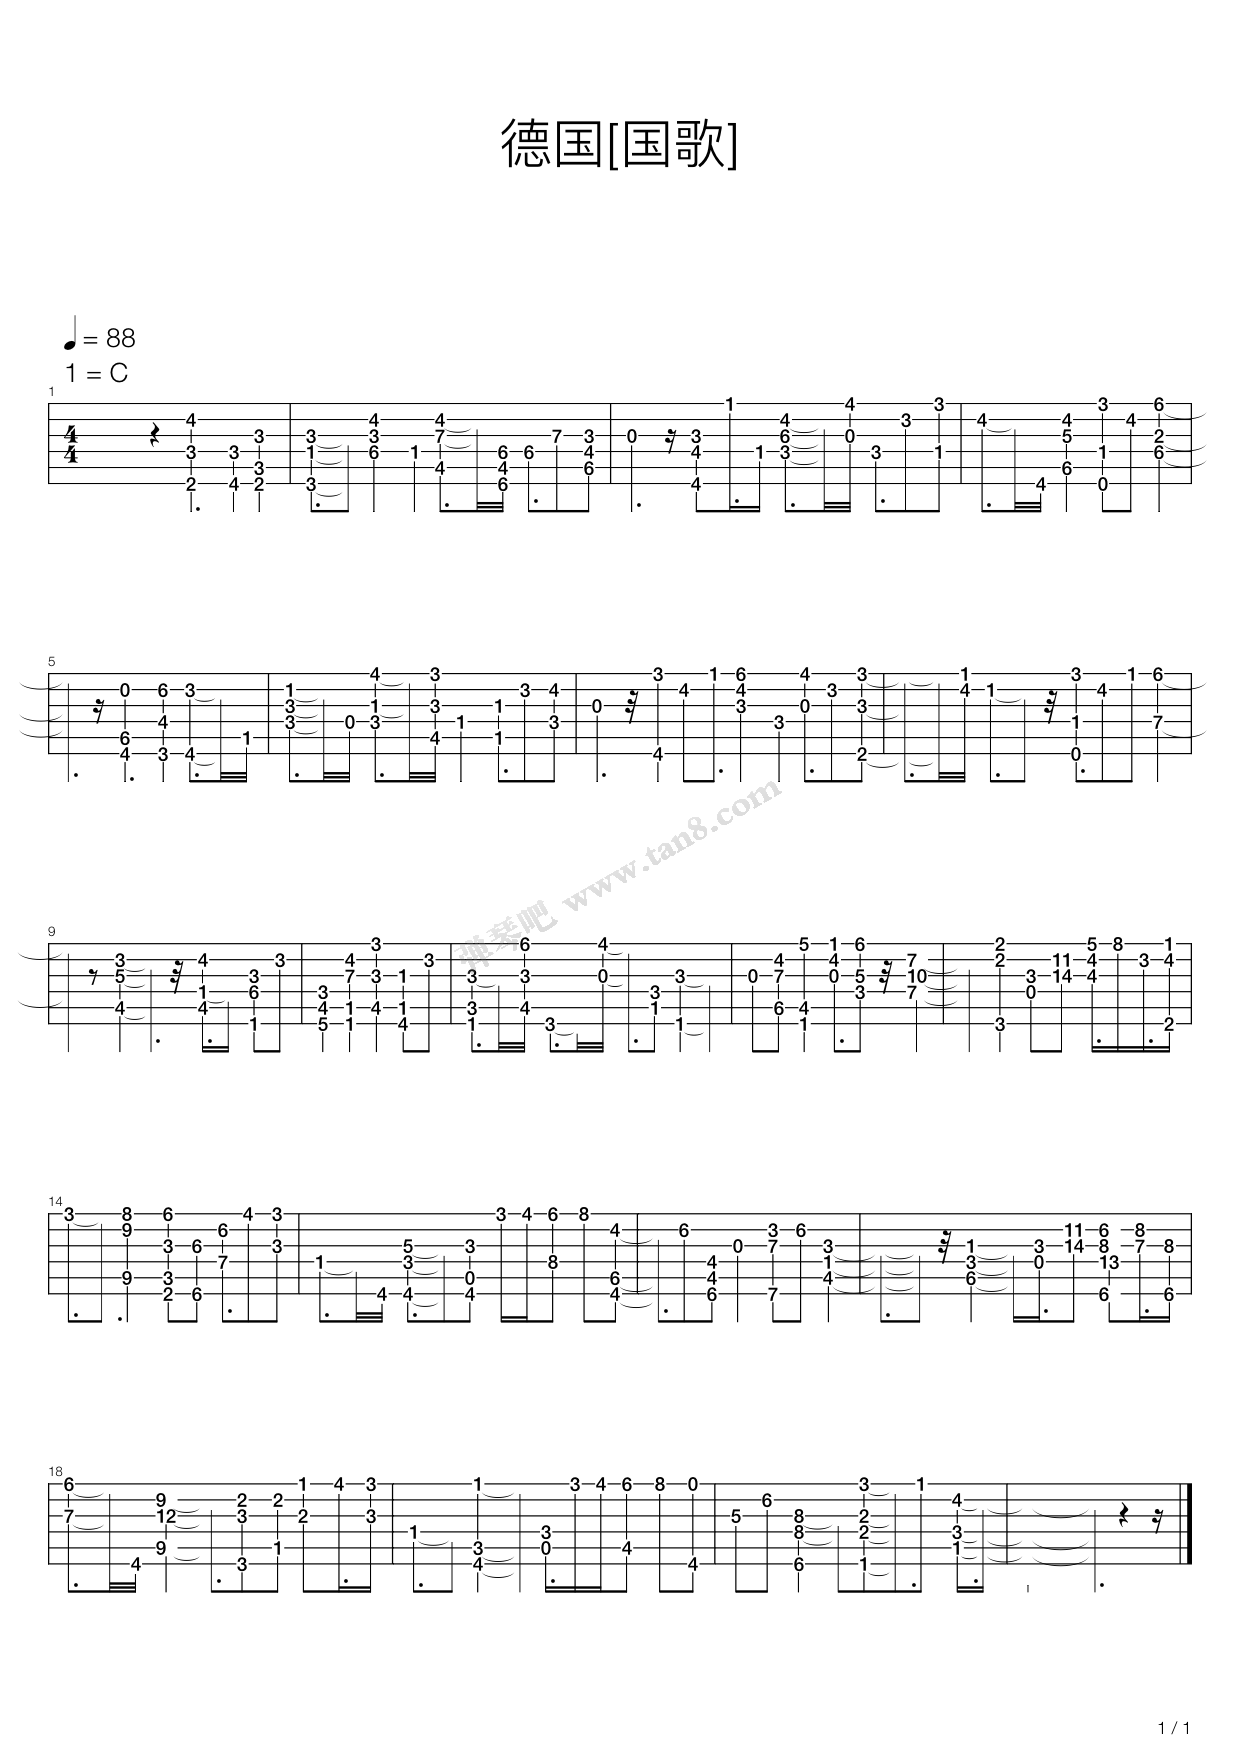 贝加尔湖畔-单音预览版 （五四线谱）_心动吉他个人制谱园地_中国曲谱网